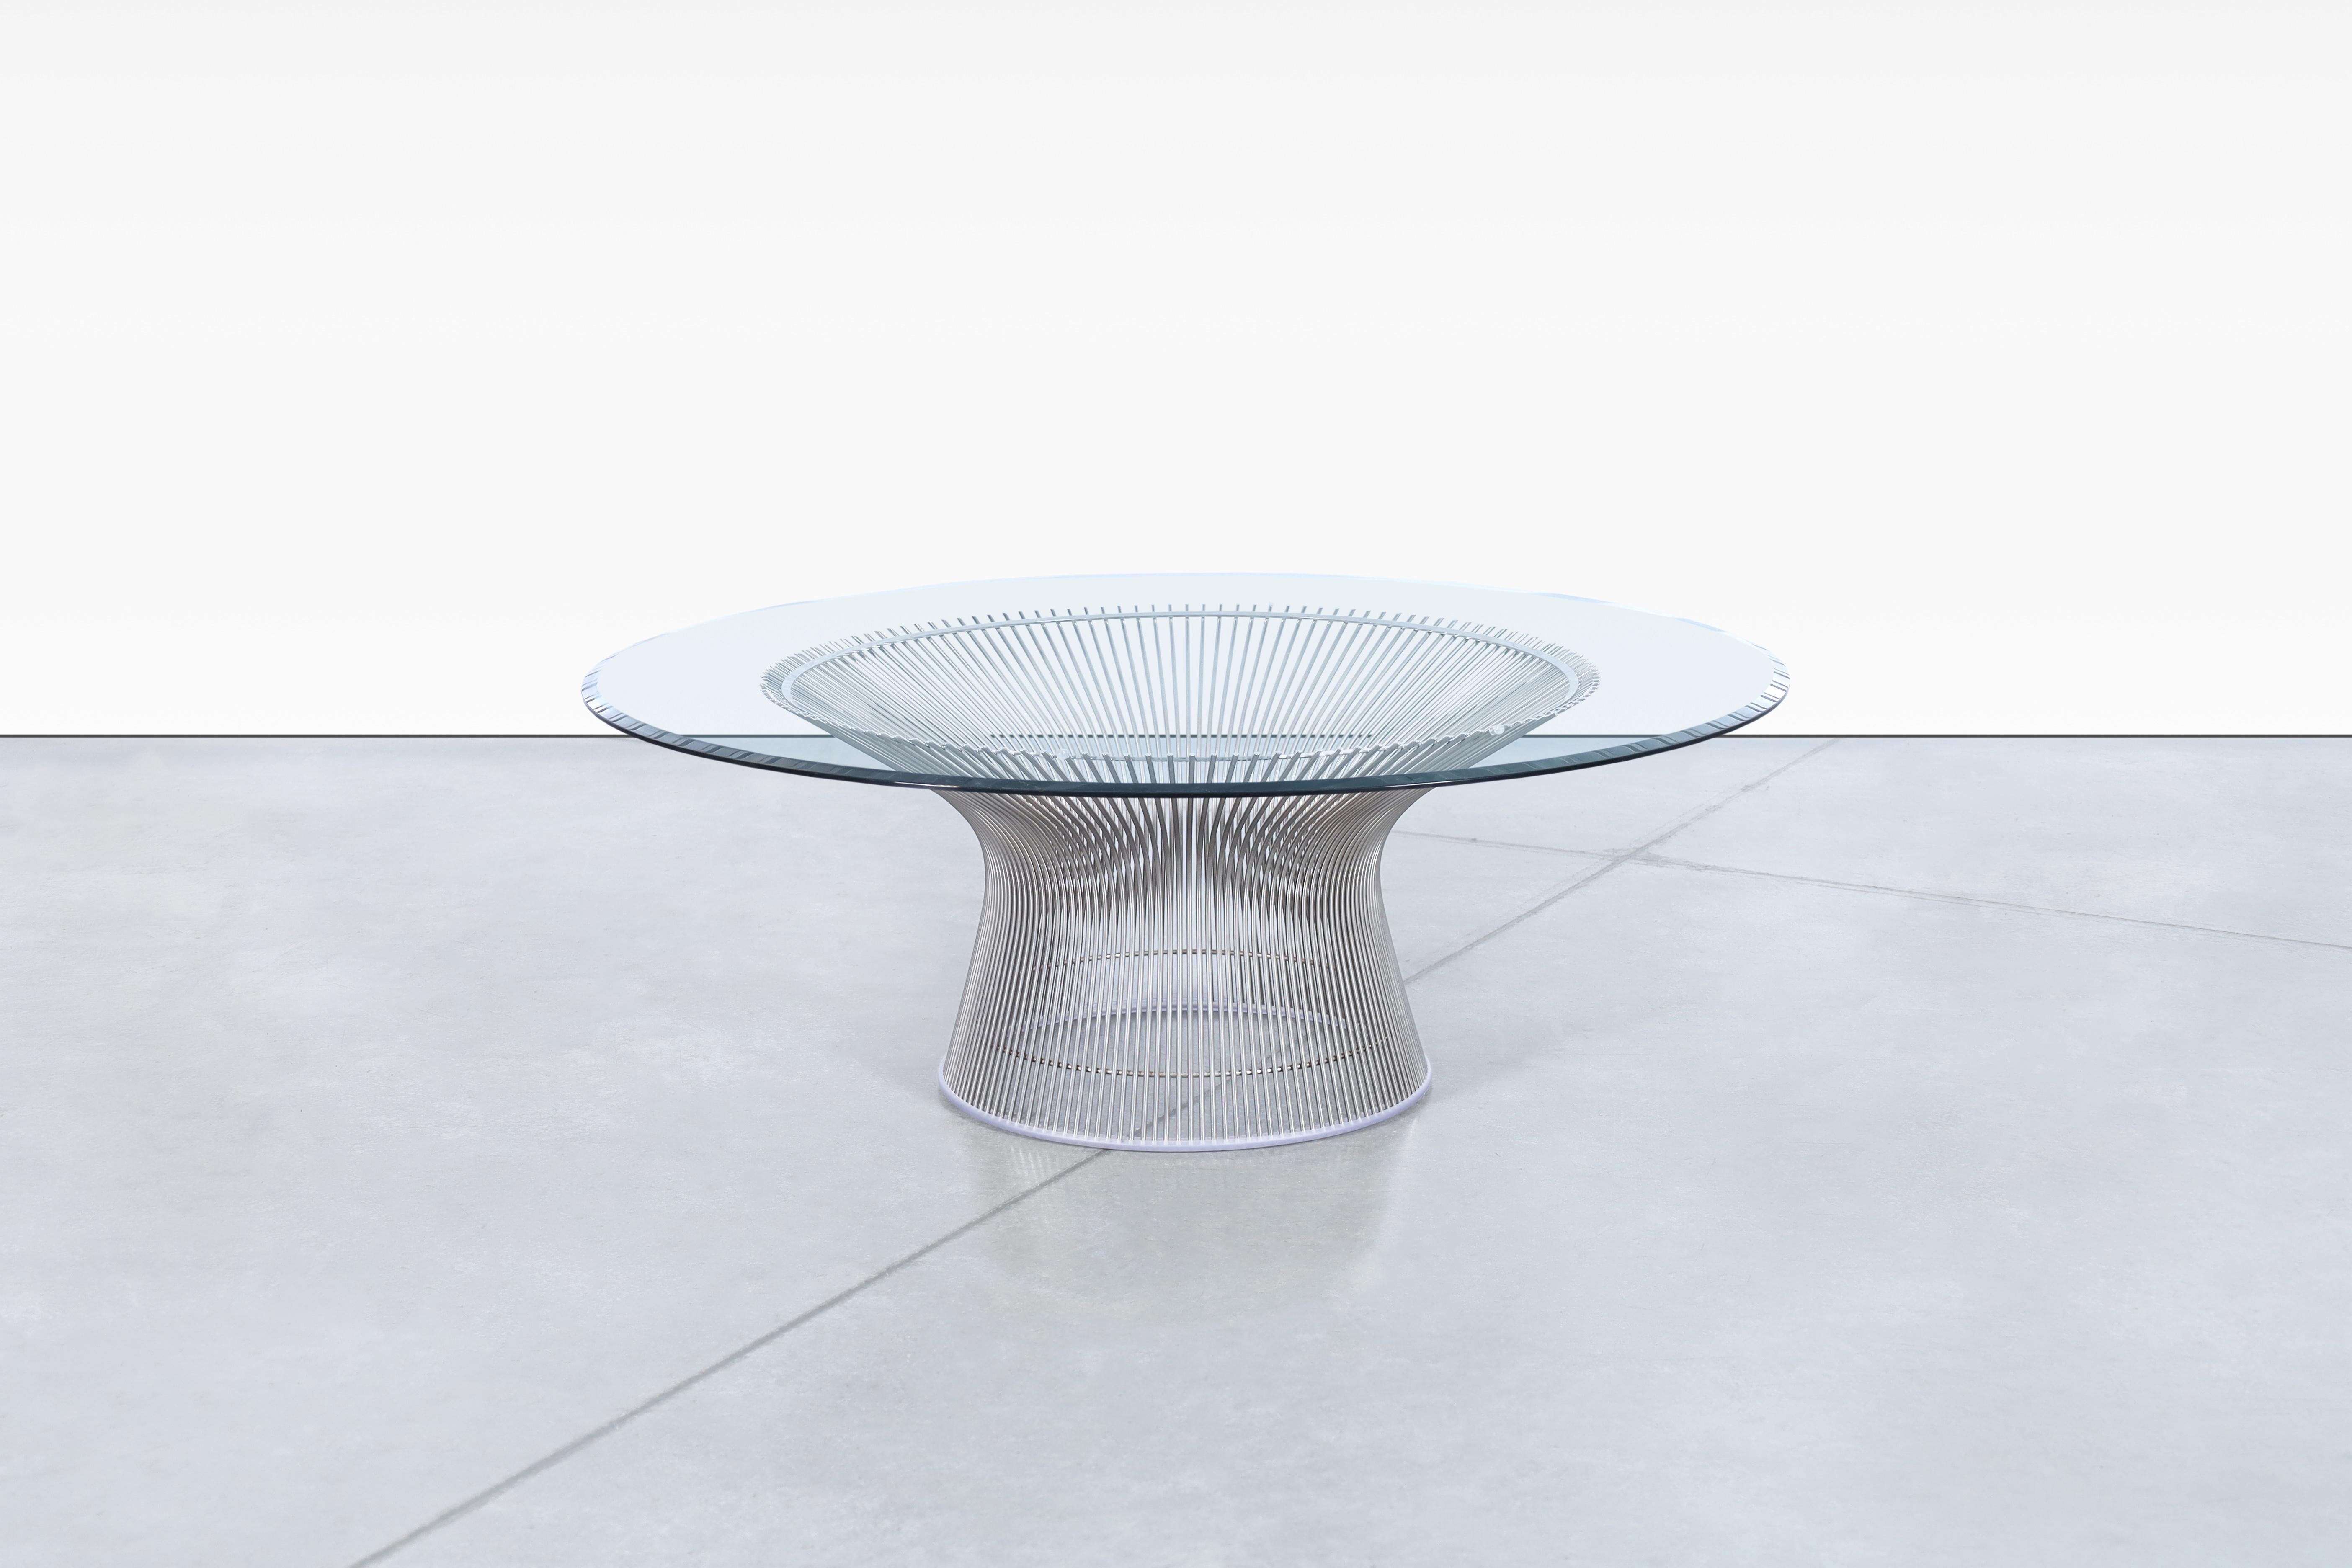 La table basse en nickel poli a été conçue par Warren Platner et produite par Knoll, ce qui en fait un meuble à la fois élégant et bien fabriqué. La table a été construite avec plusieurs tiges d'acier incurvées qui ont été soudées à des cadres